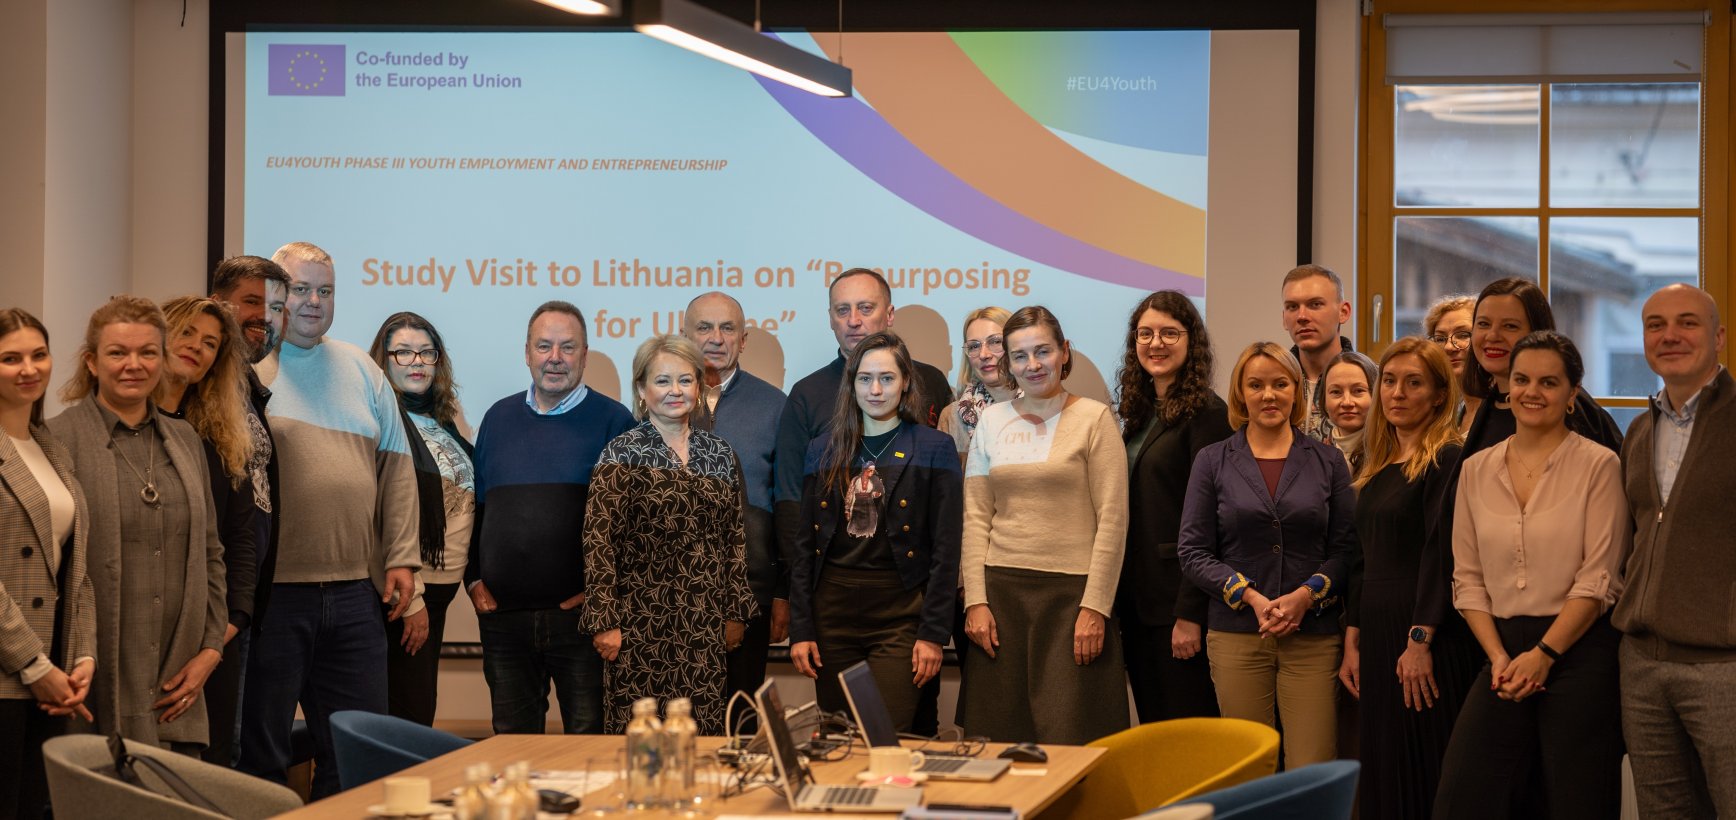 EU4Youth: Strengthening Youth Resilience Through Ukrainian NGO Partnerships